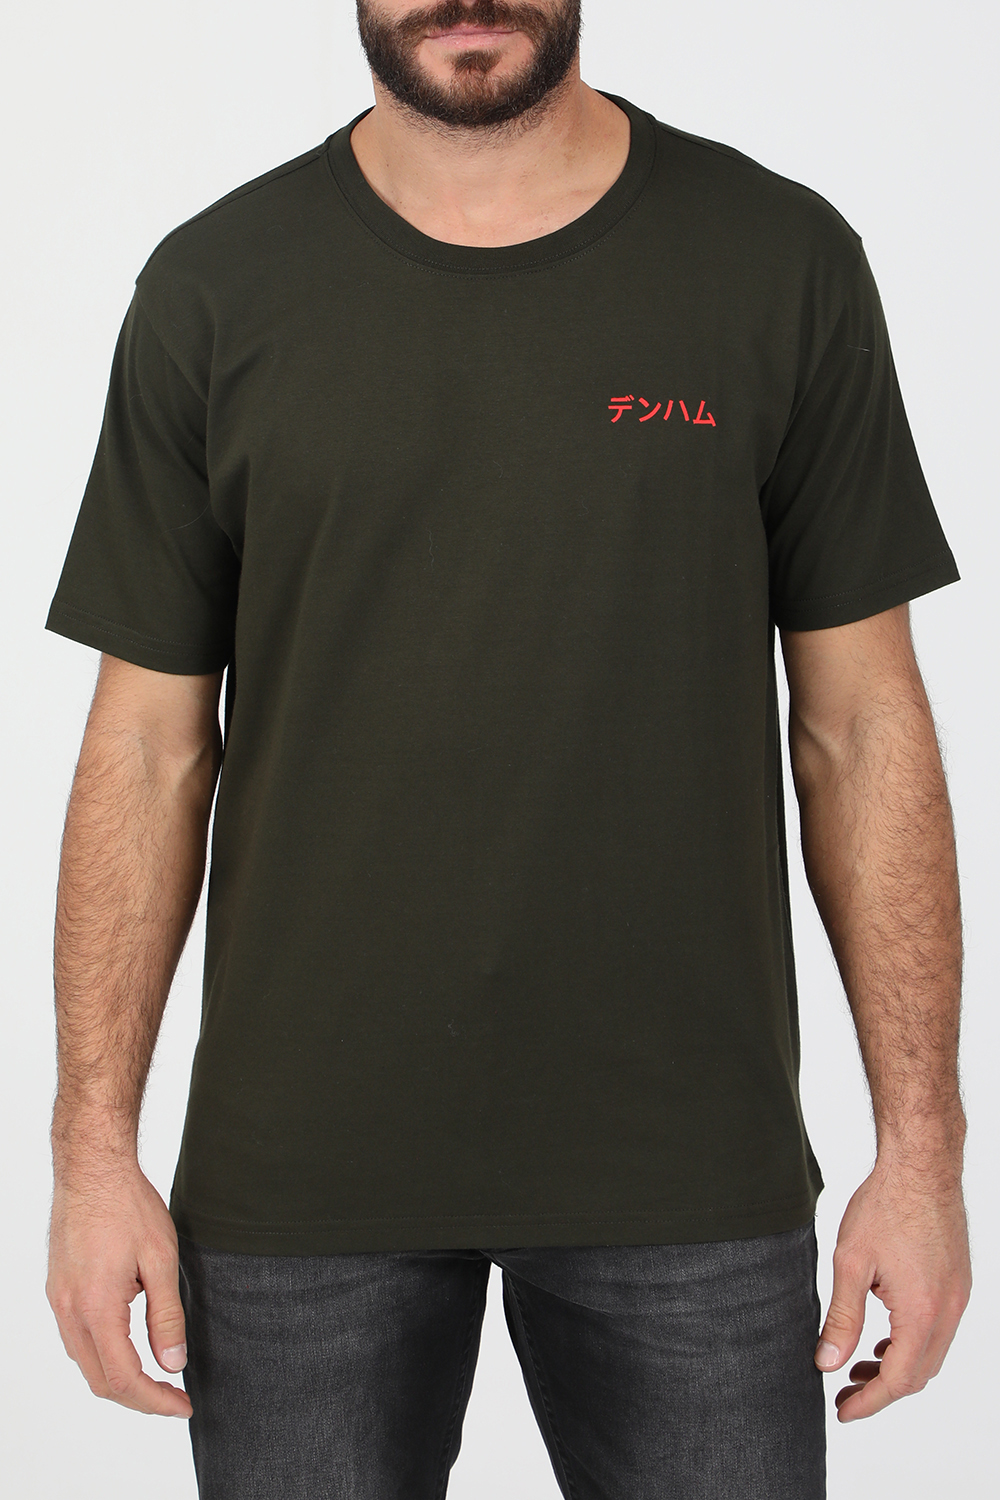 Ανδρικά/Ρούχα/Μπλούζες/Κοντομάνικες DENHAM - Ανδρικό t-shirt DENHAM SNAKE REG μαύρο